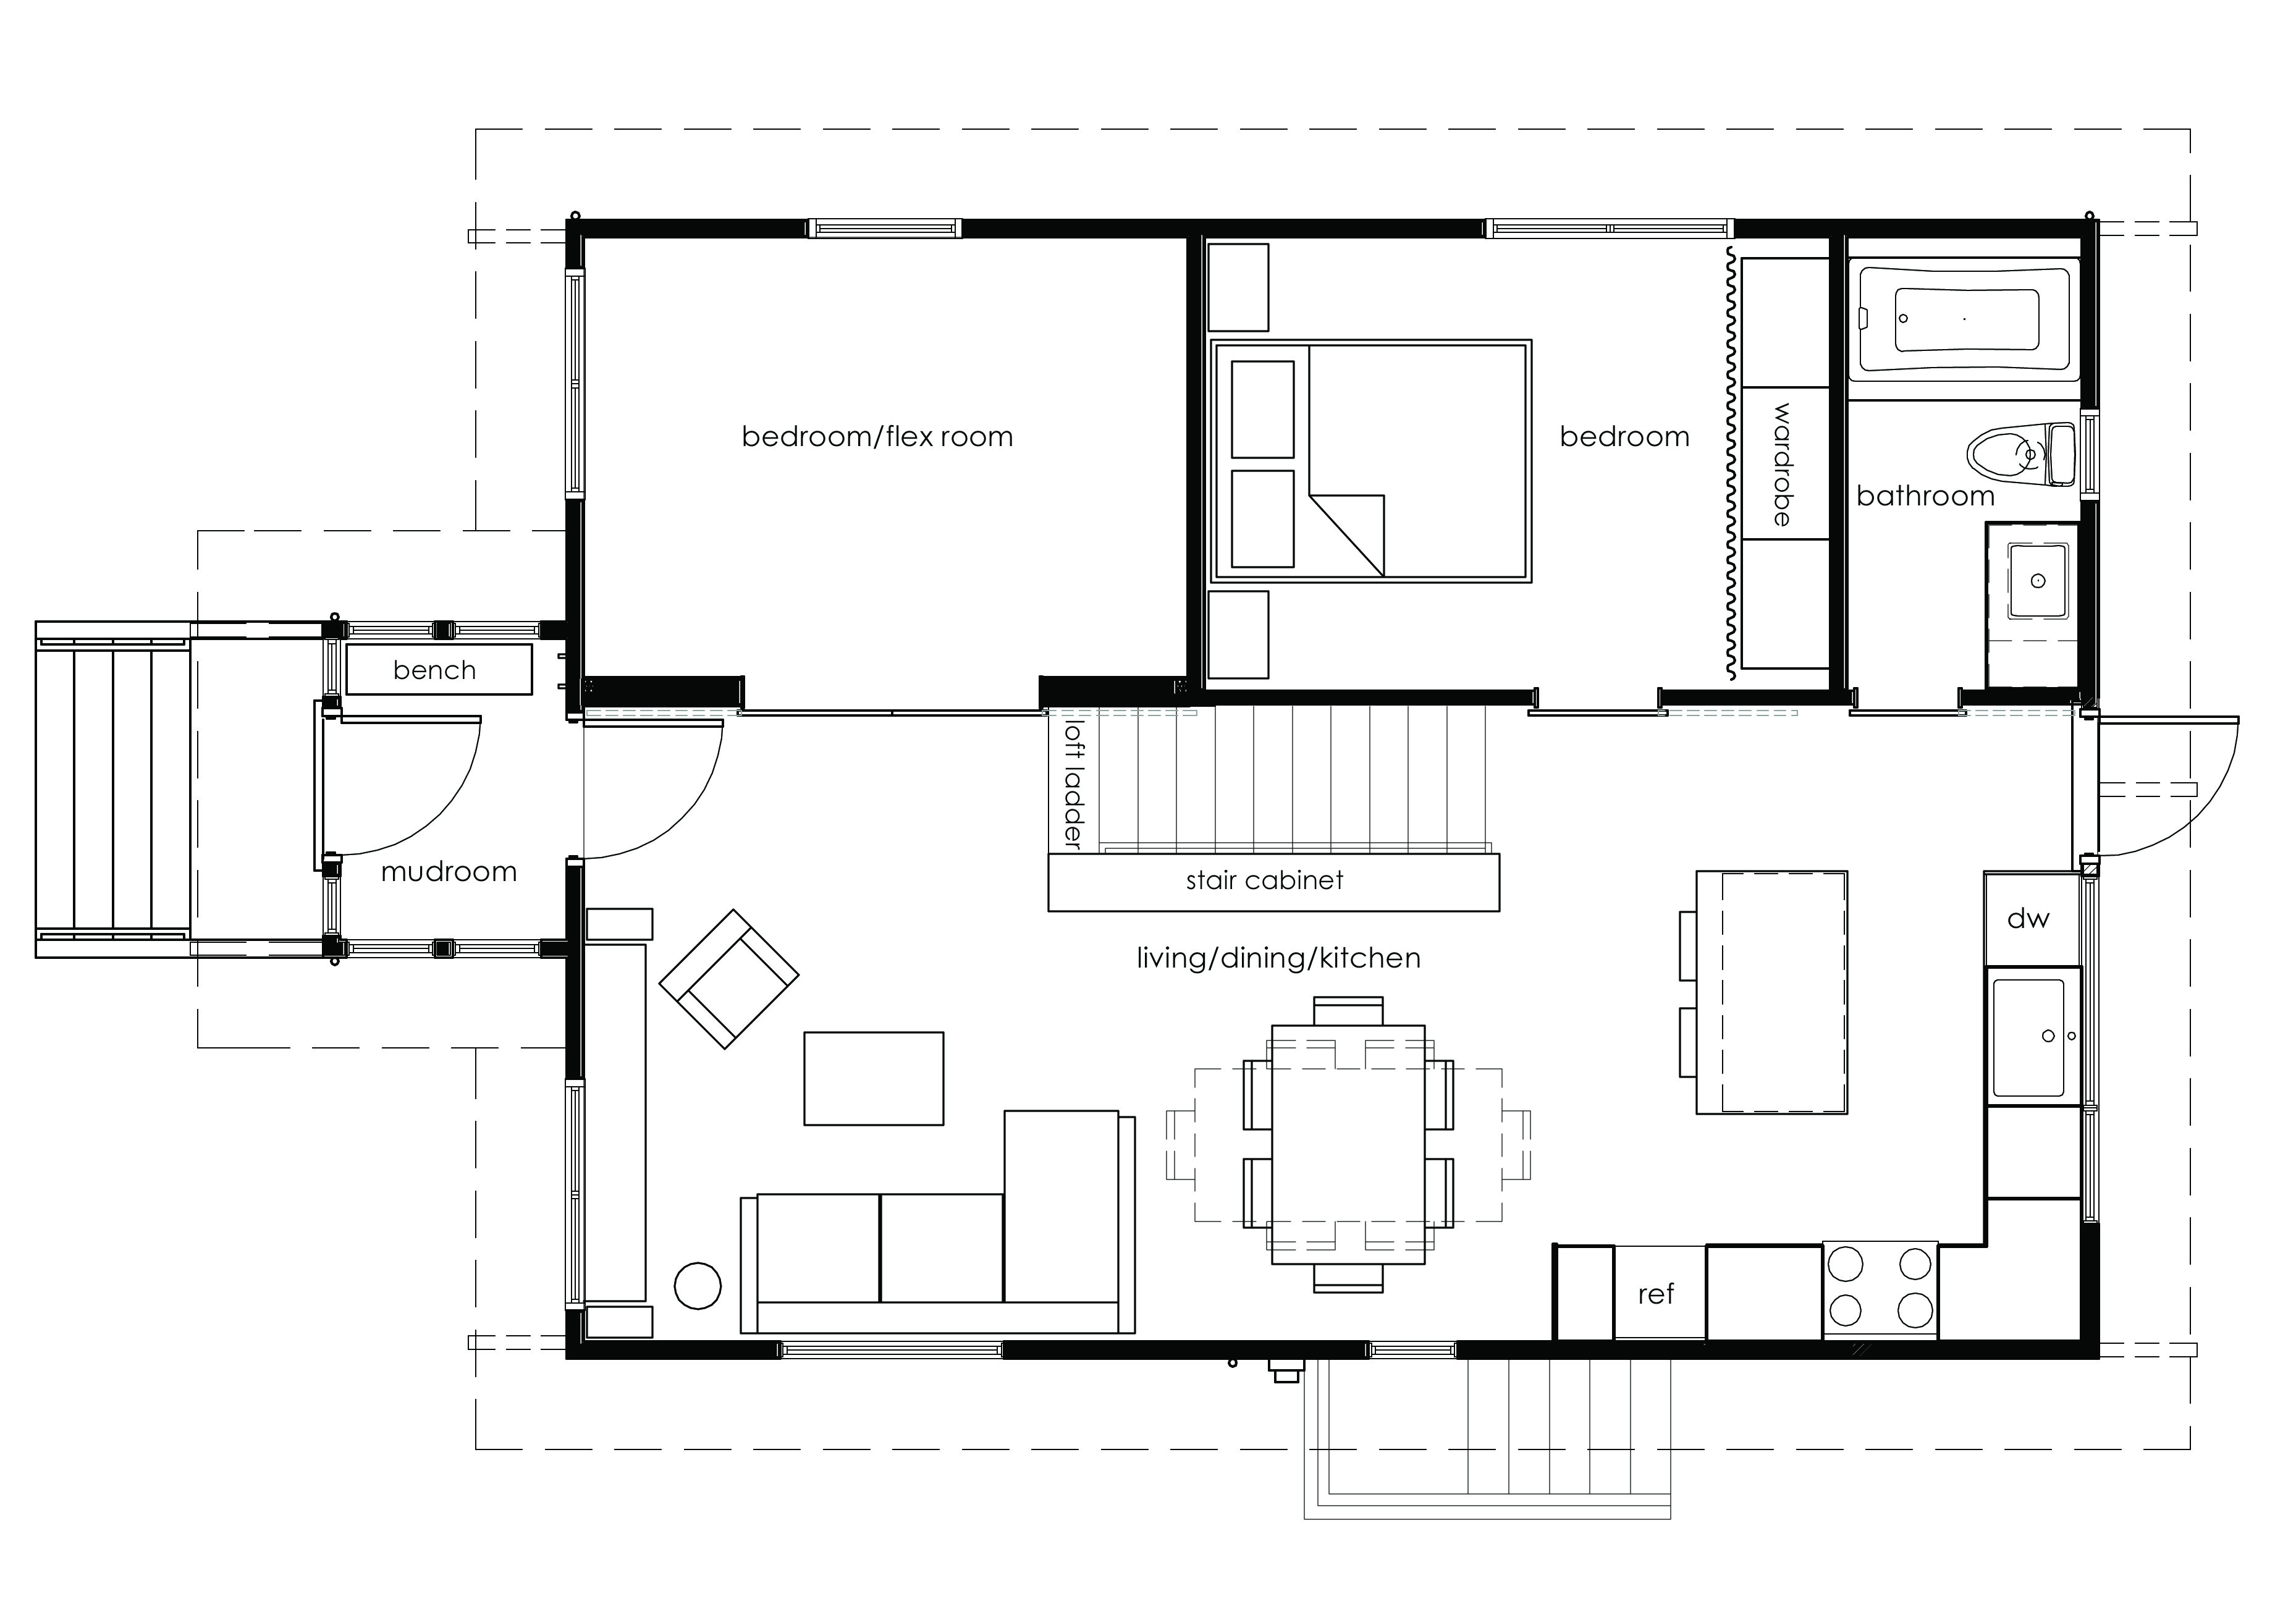 Print Room Floor Plan | Joy Studio Design Gallery - Best ...